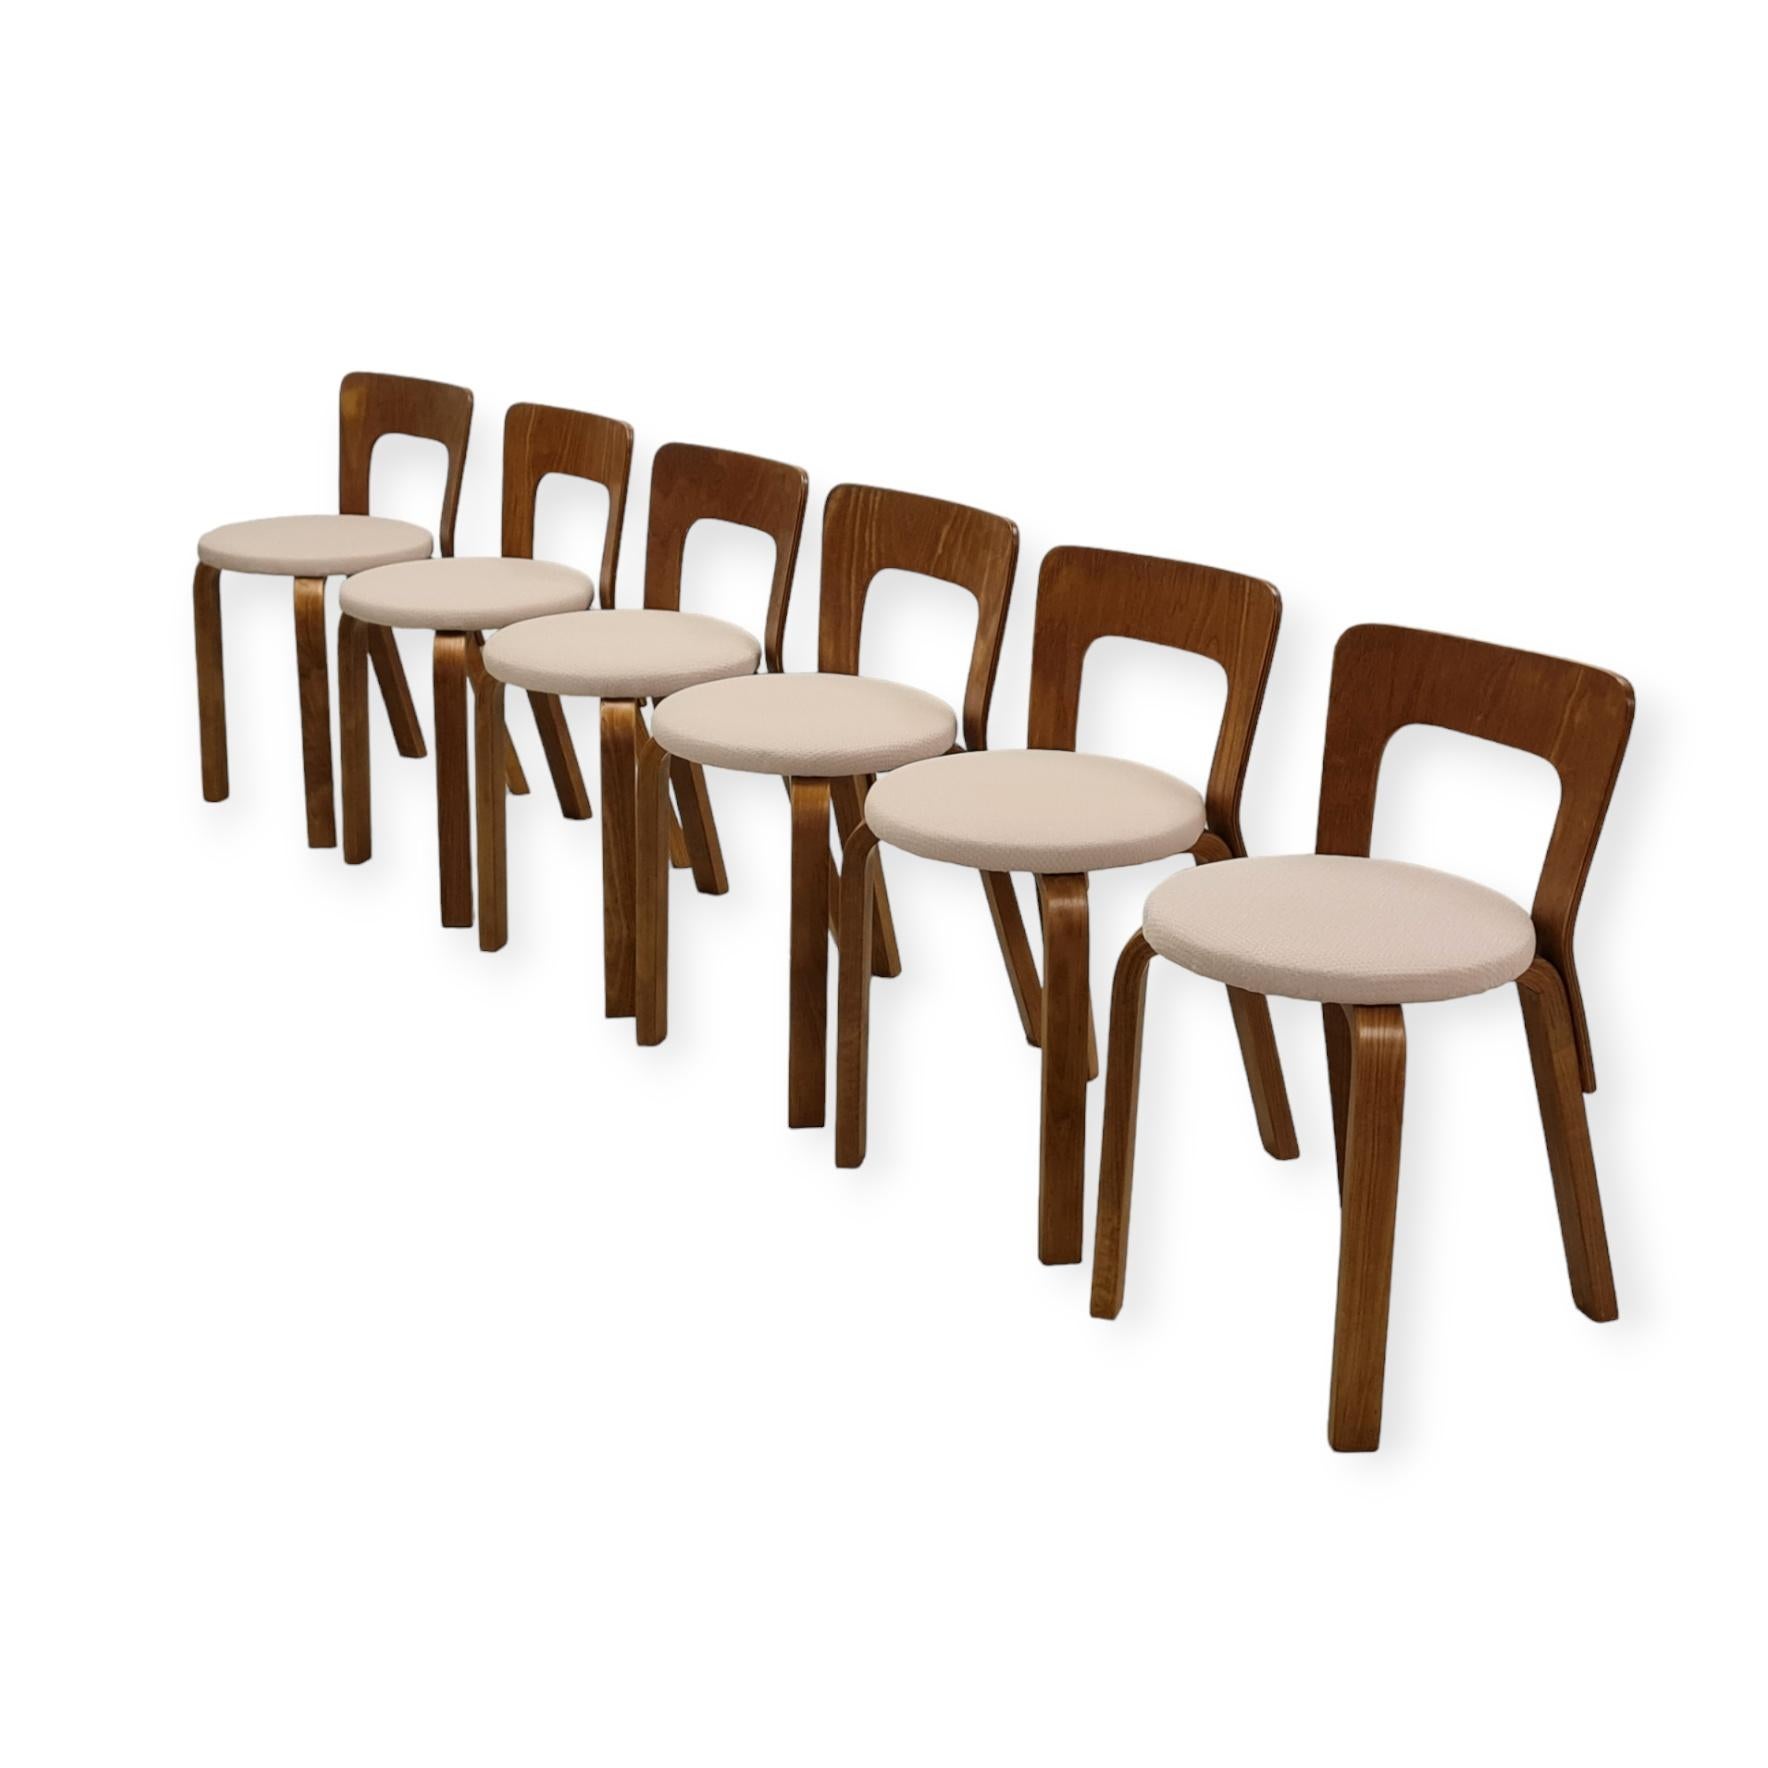 Alvar Aalto a conçu un très grand nombre de chaises pour de nombreux foyers et bâtiments publics. Ces chaises sont celles dont le dossier est en version inférieure, modèle no. 65. Les chaises sont très robustes et pratiques pour un usage quotidien.